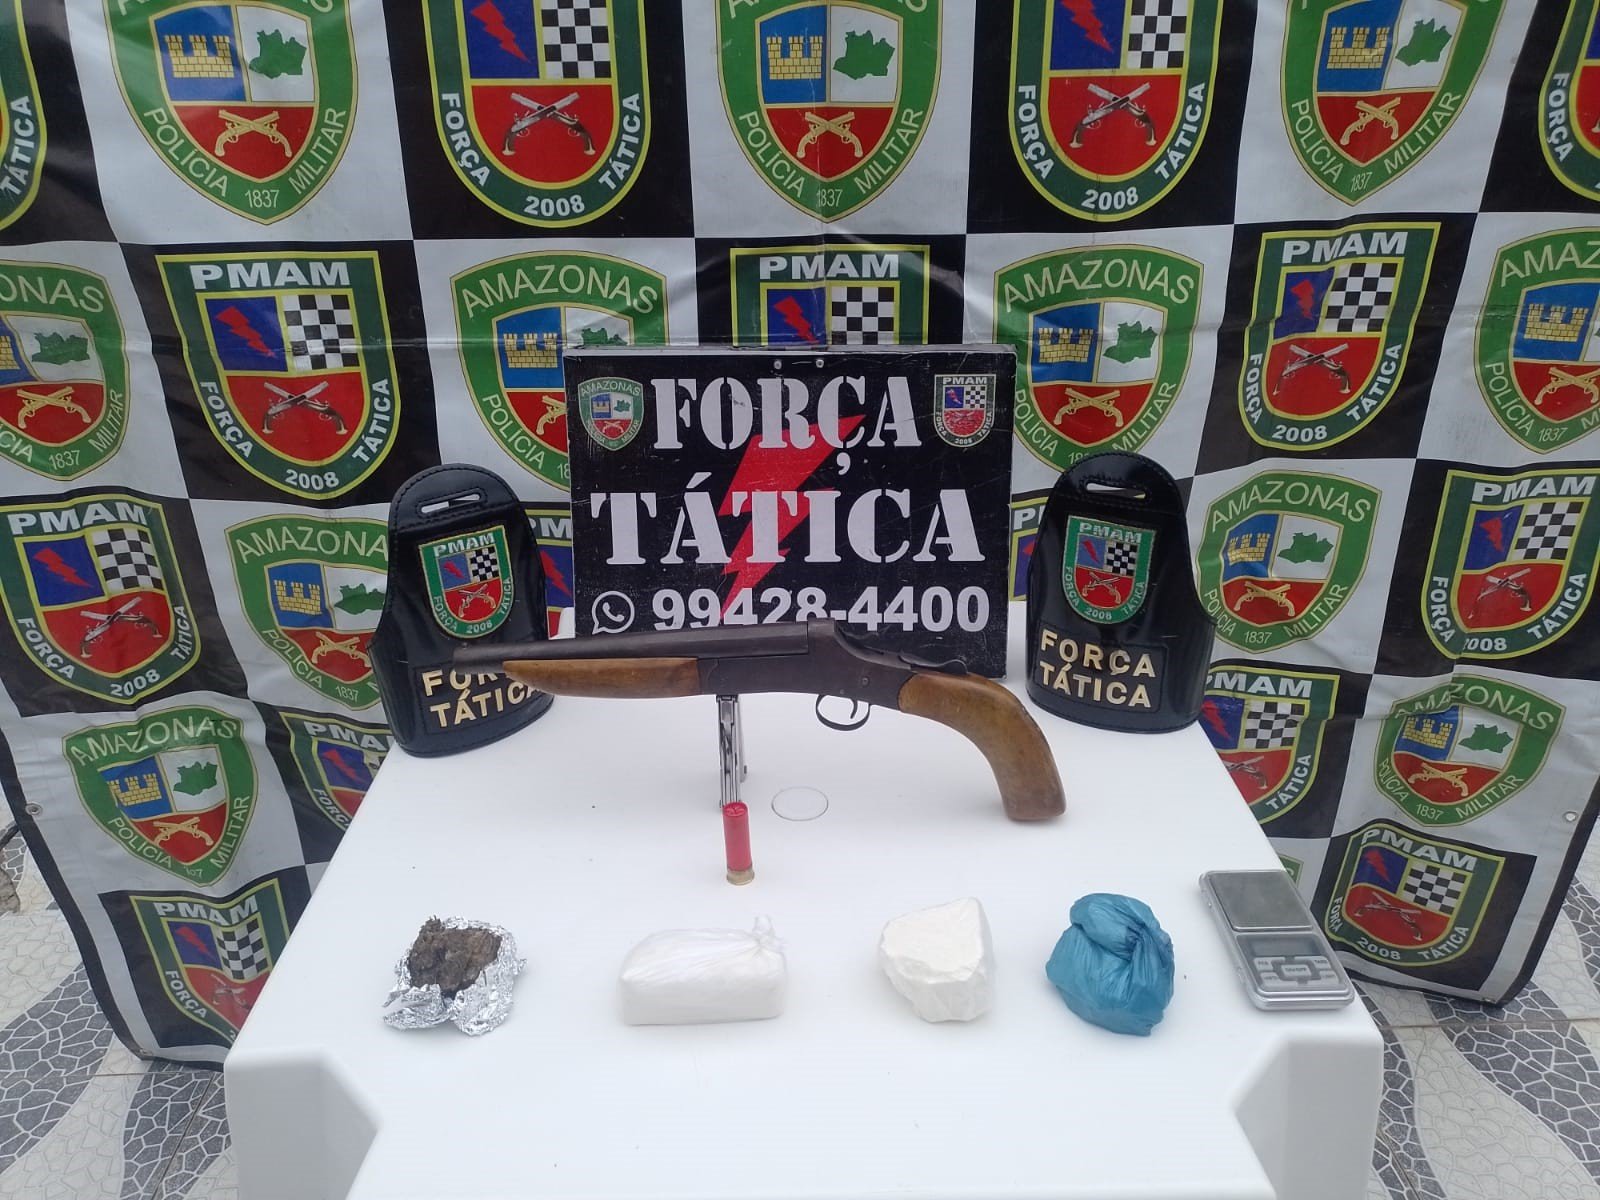 Adolescente guardava drogas e a espingarda em seu quarto, segundo polícia - Foto: Divulgação/PMAM